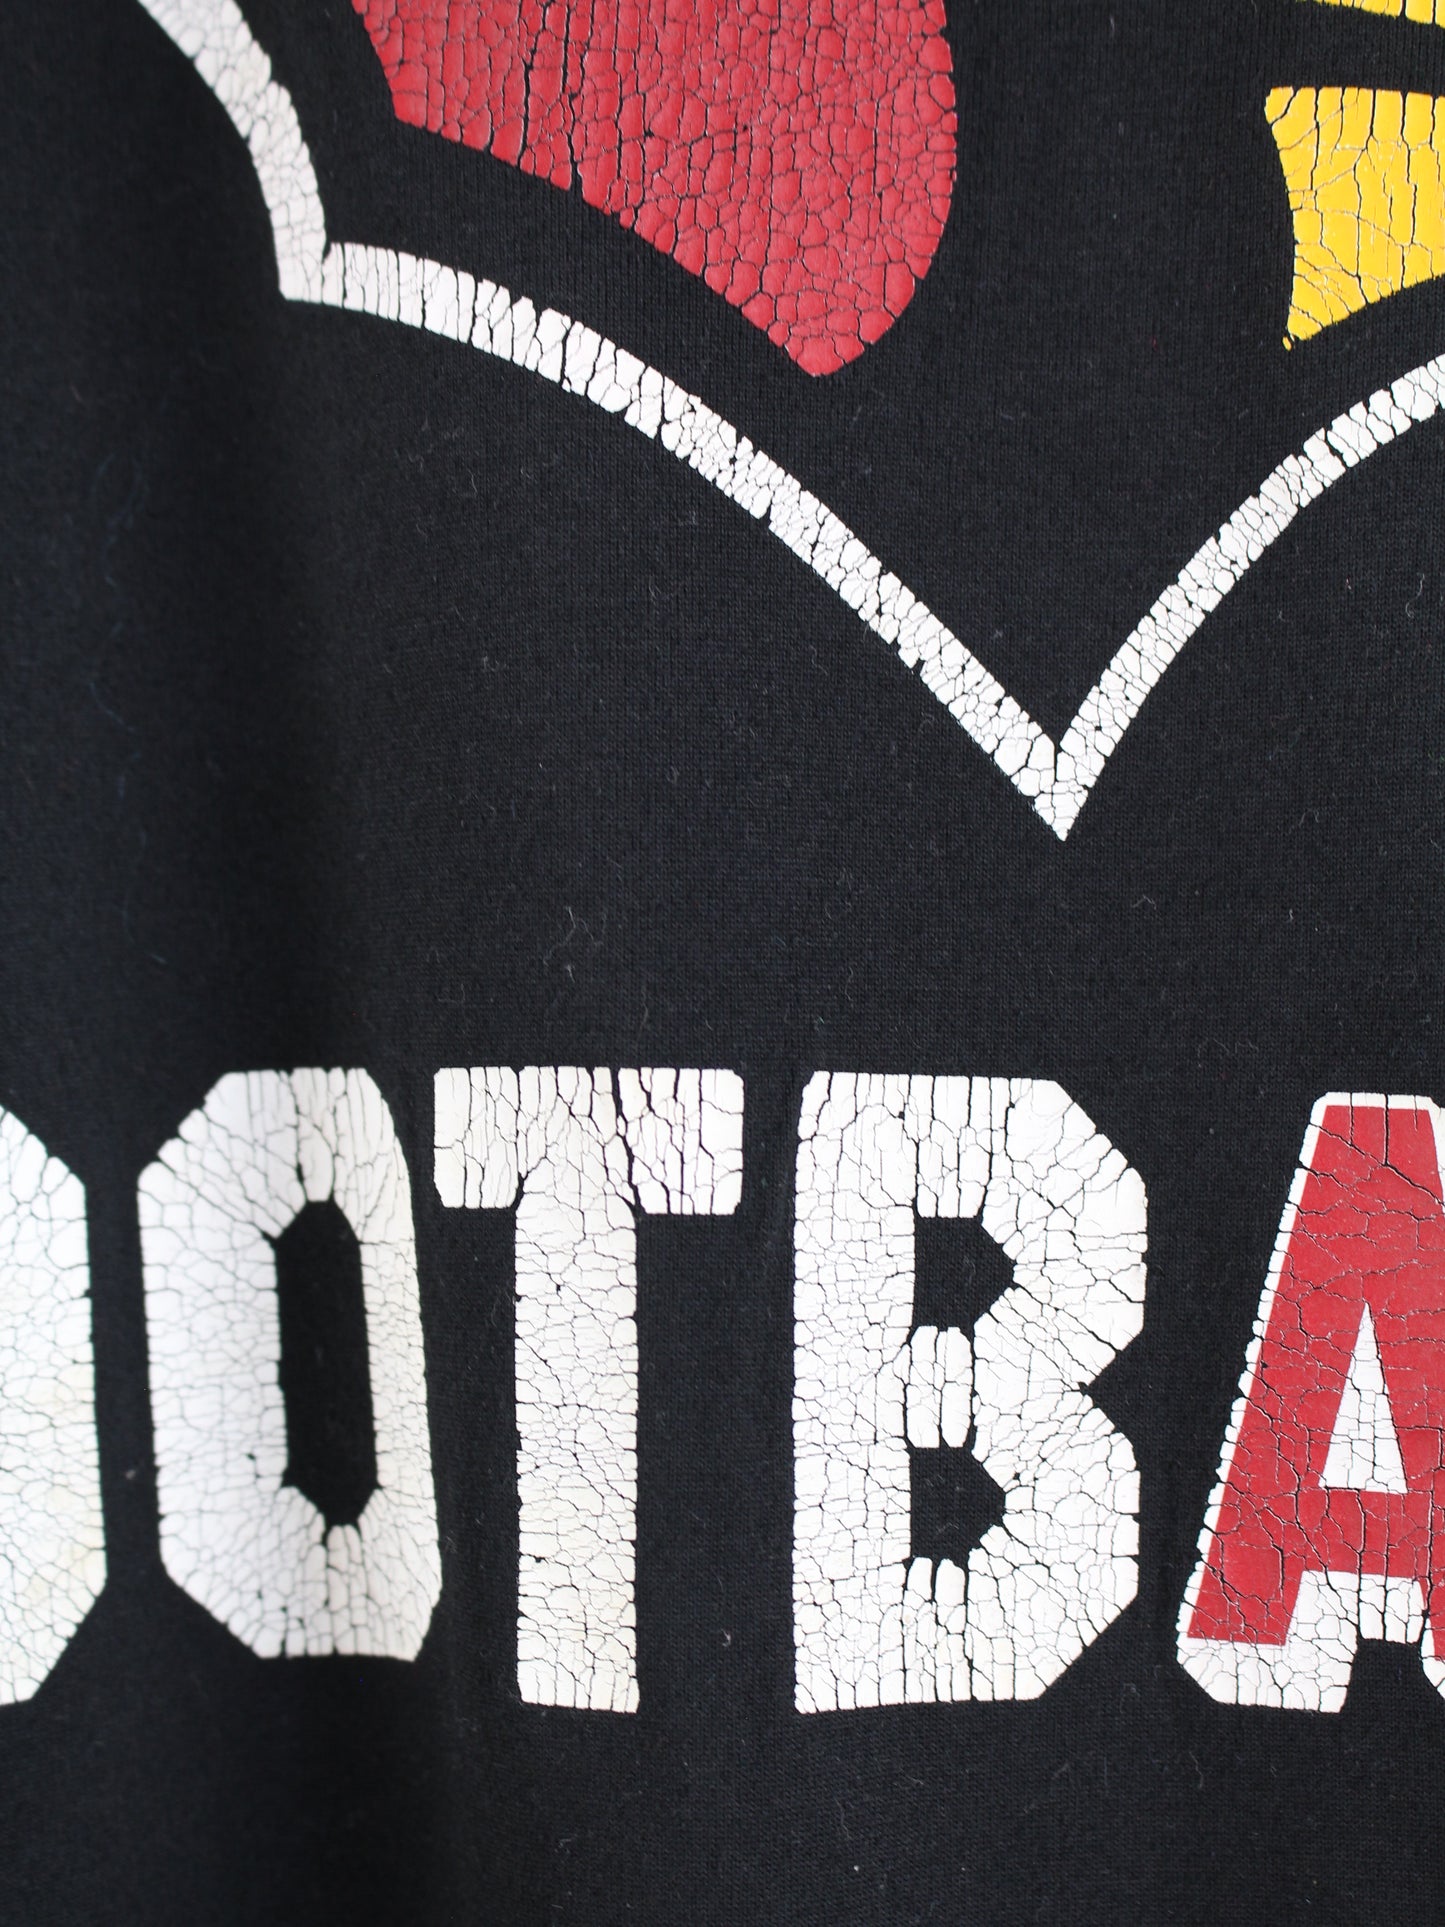 Nike Football Sport T-Shirt Schwarz XL